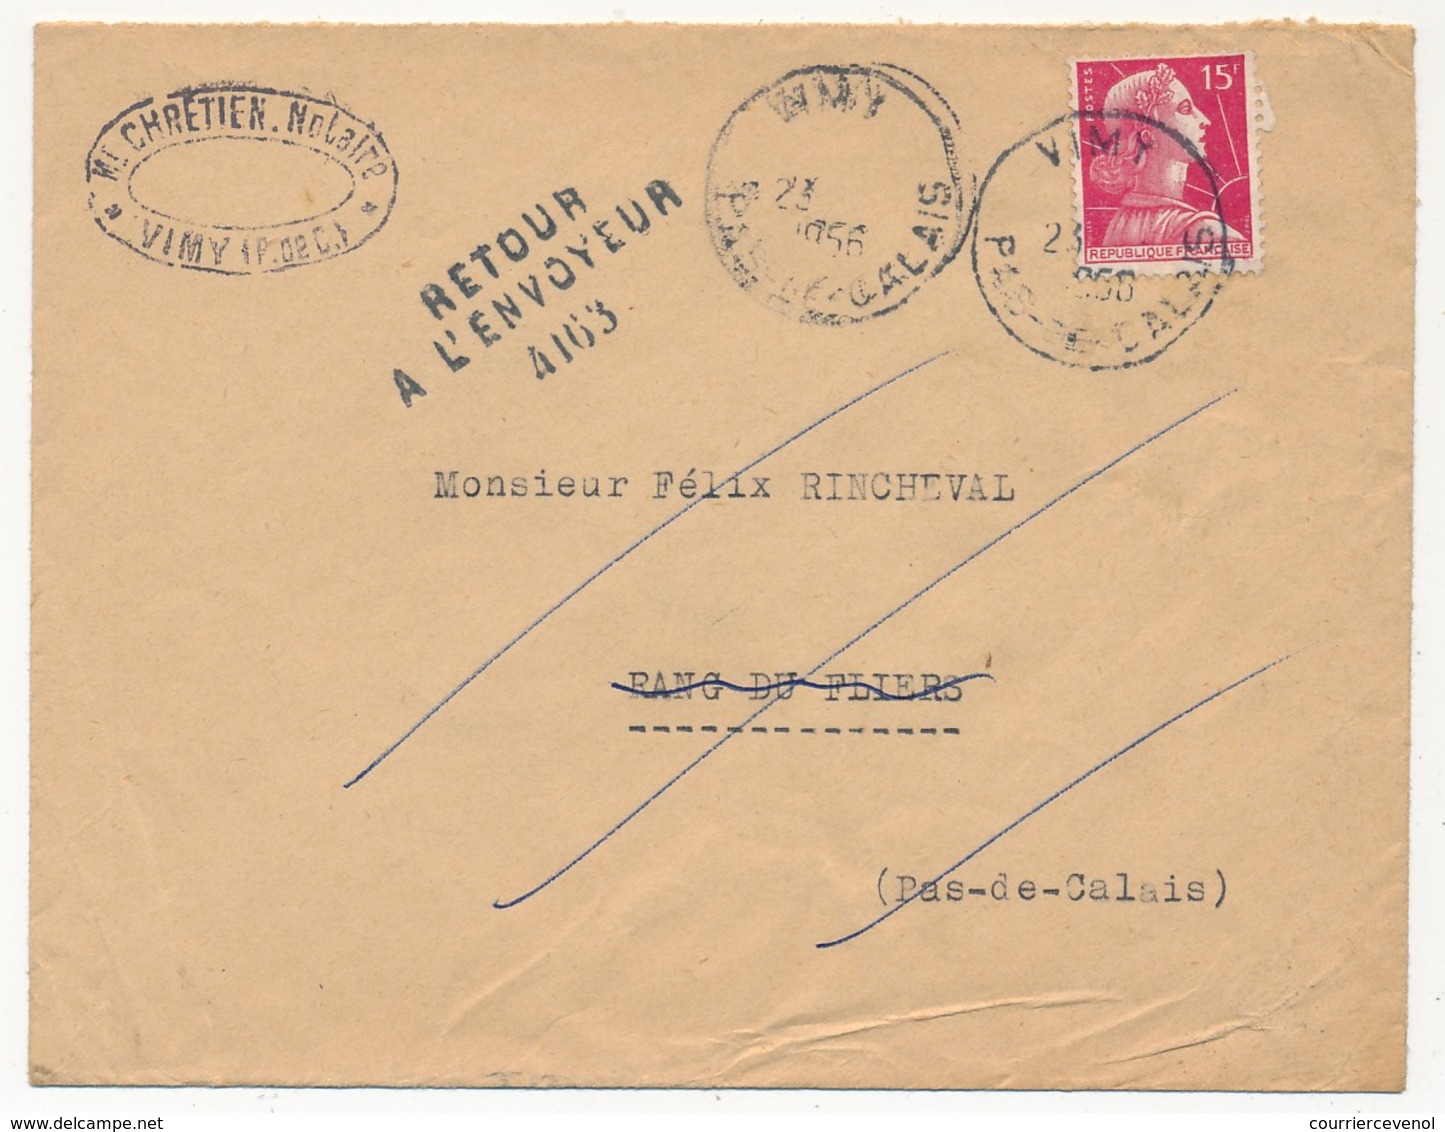 FRANCE - Enveloppe Depuis VIMY (Pas De Calais) 1956 - Cachet Numéroté "Retour à L'envoyeur 4163" (Rang Du Flier) - Manual Postmarks